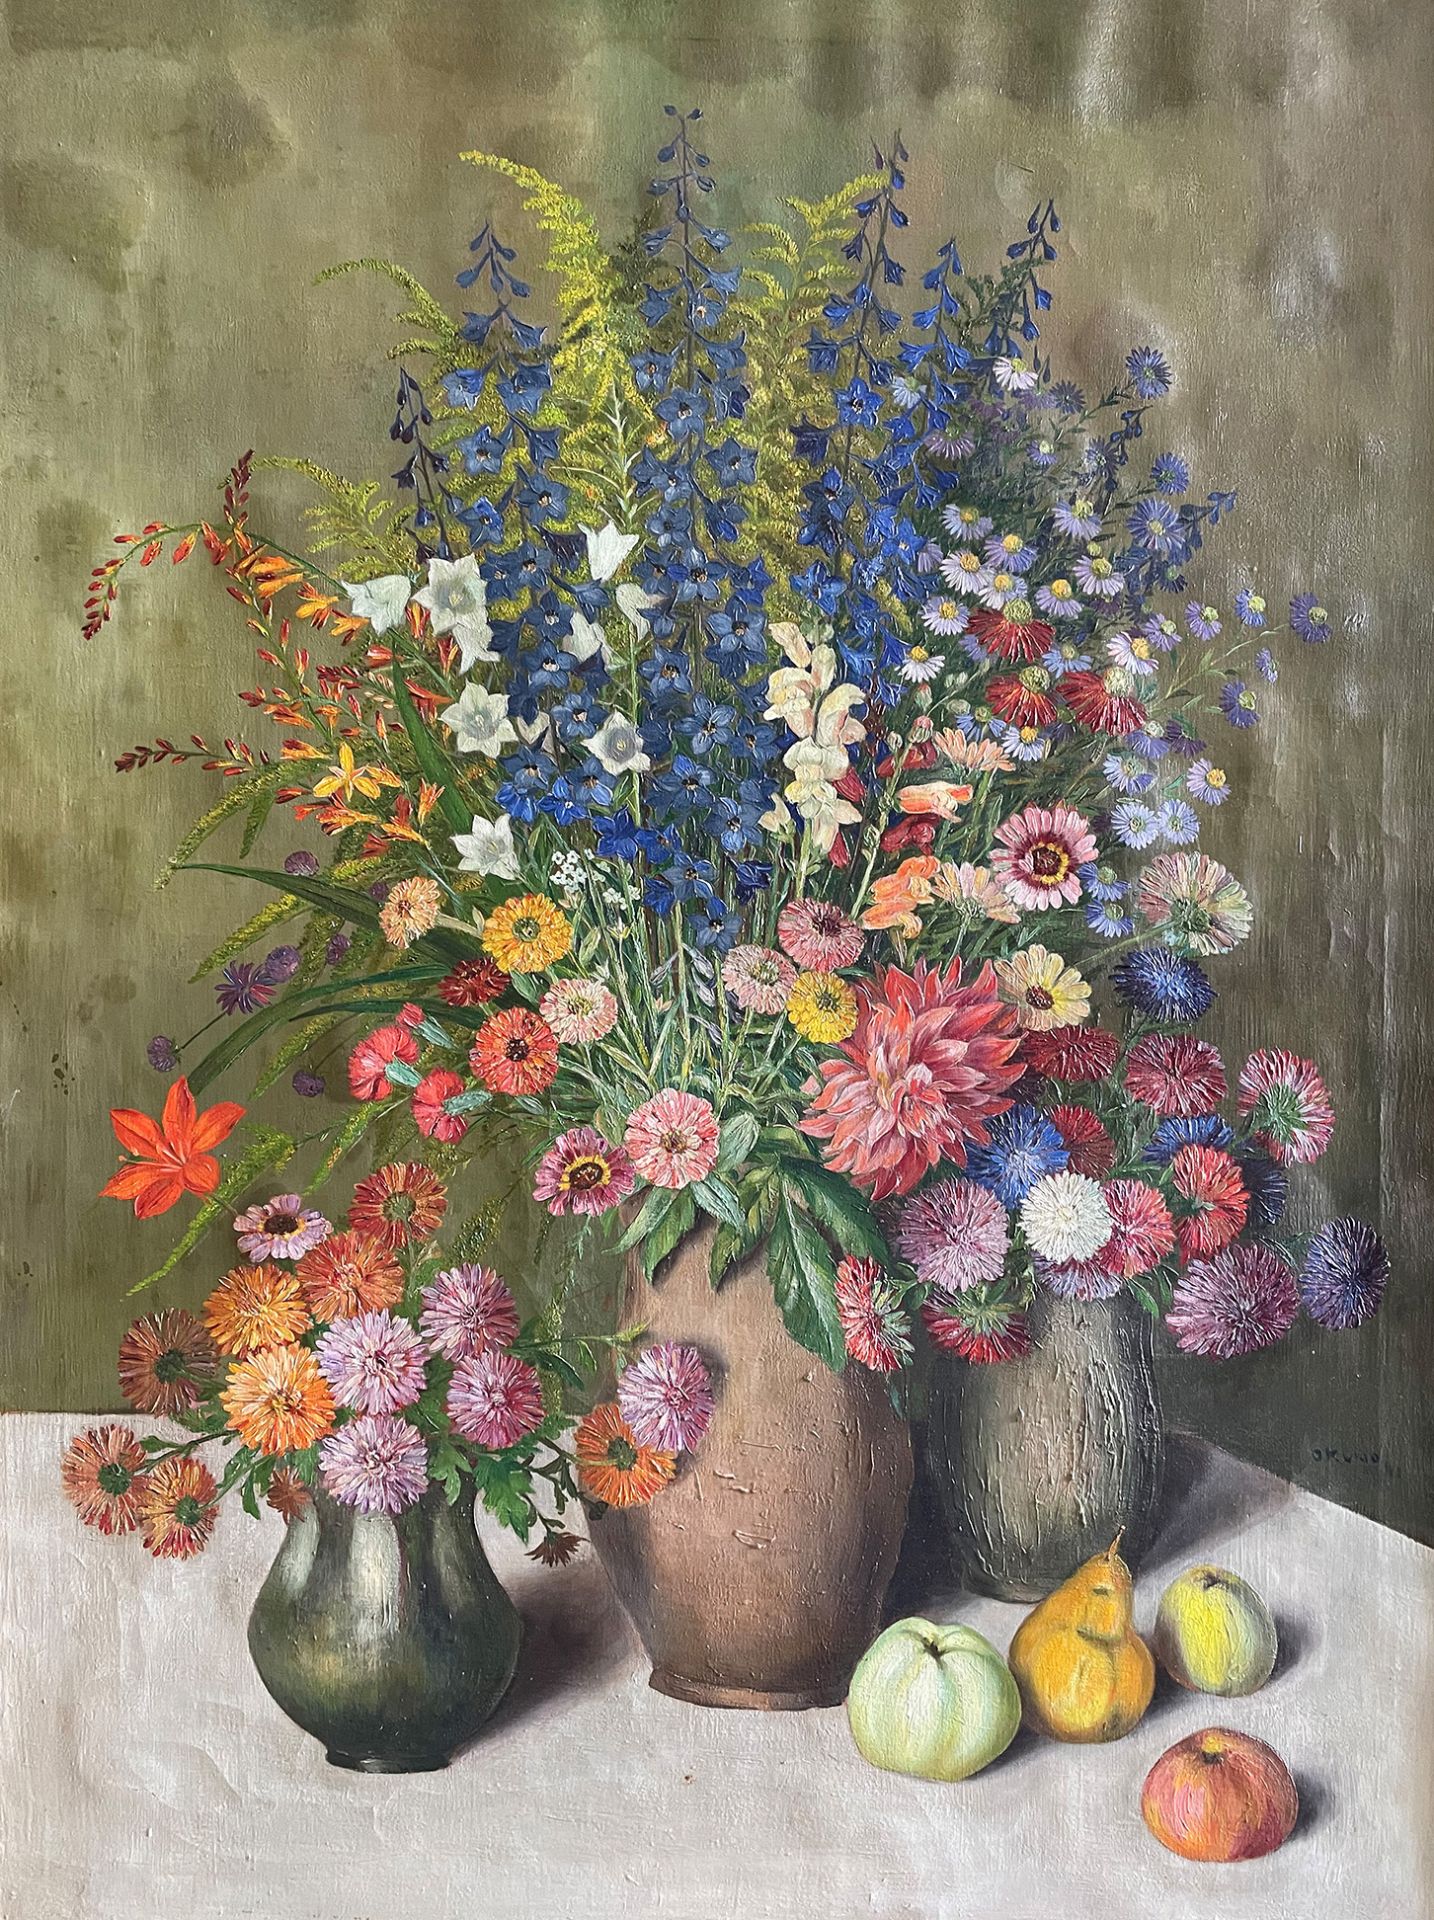 Kiyonobu Okuno (japanischer Künstler), Sommerstrauss. Stillleben mit drei Vasen in denen bunte